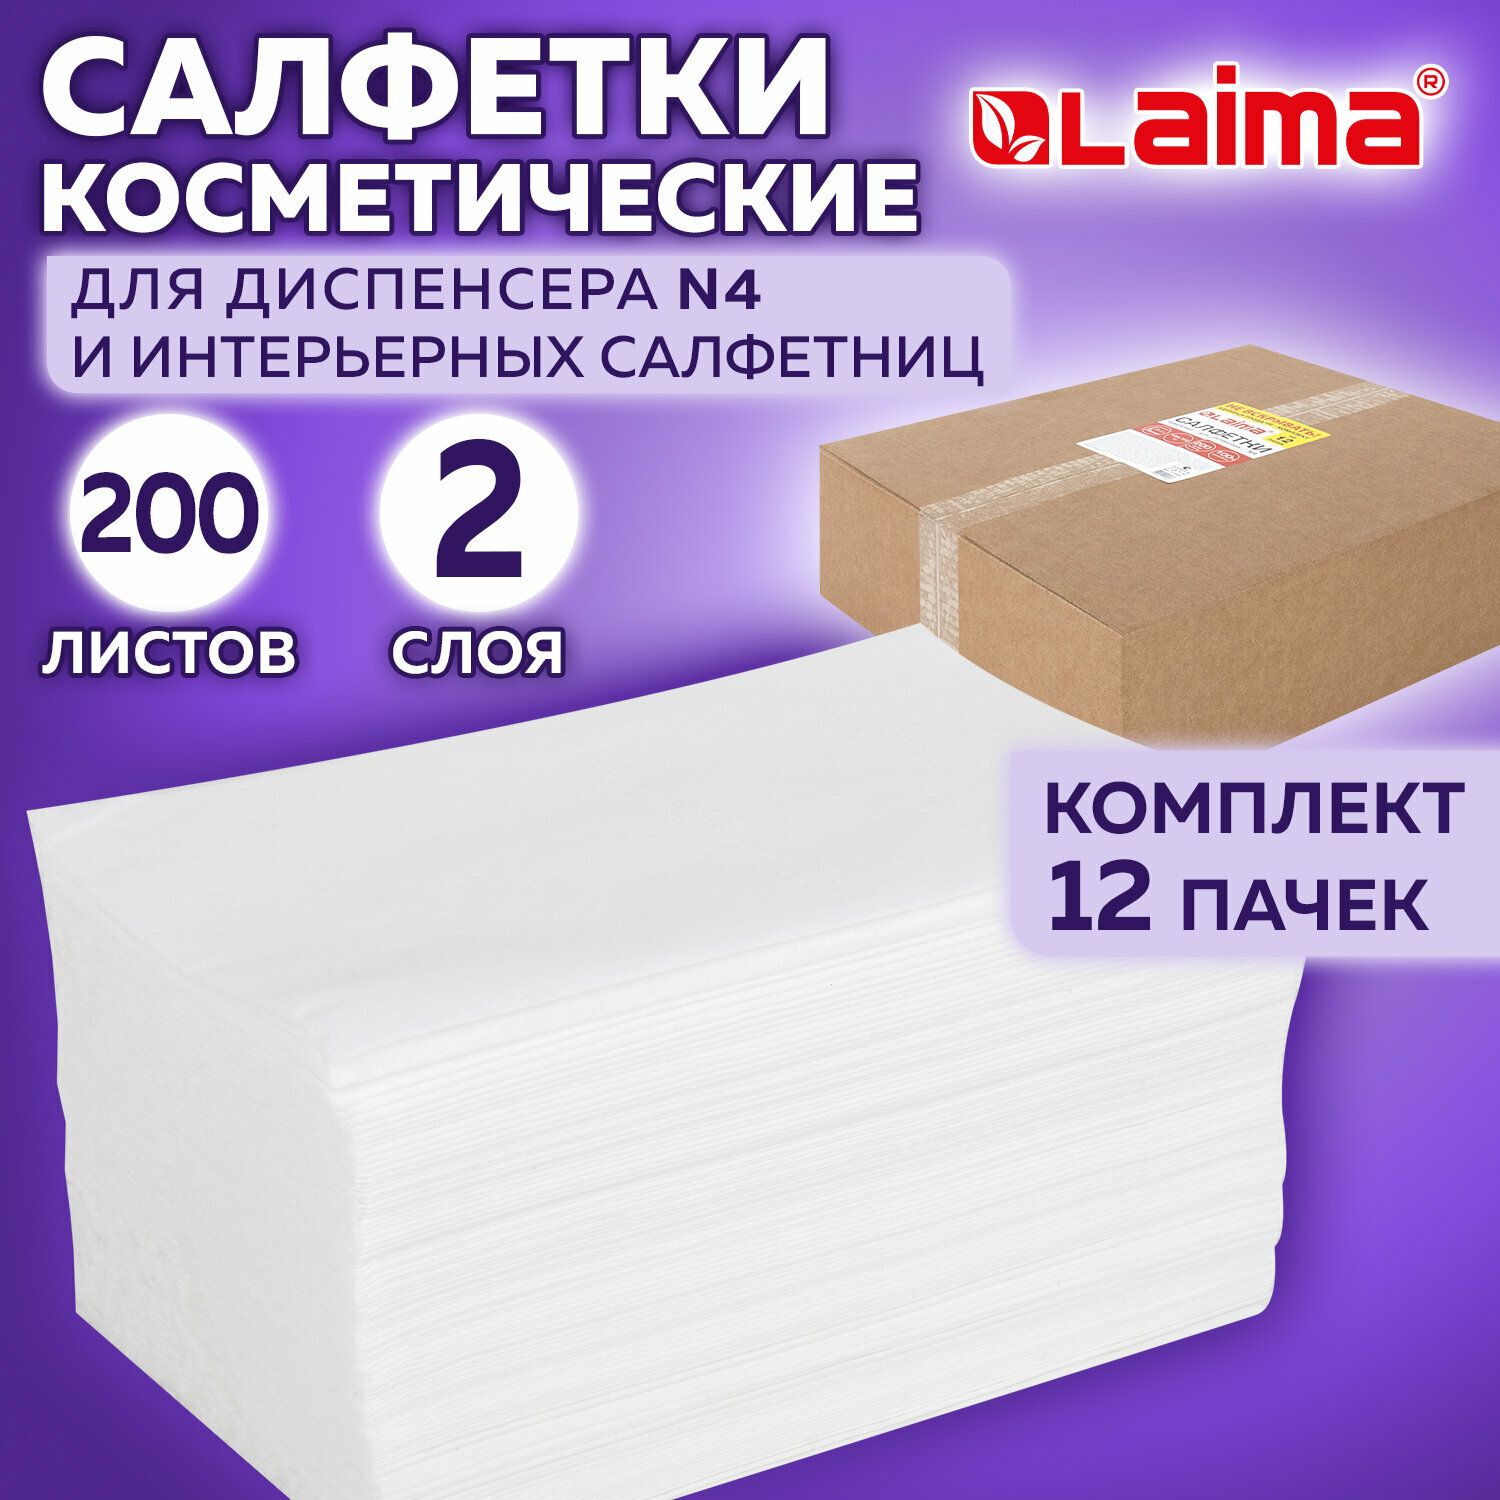 Салфетки бумажные косметические белые, для настольного диспенсера N4, 2-слойные, V сложения, набор 12 пачек по 200 cалфеток, Laima Premium, 115503